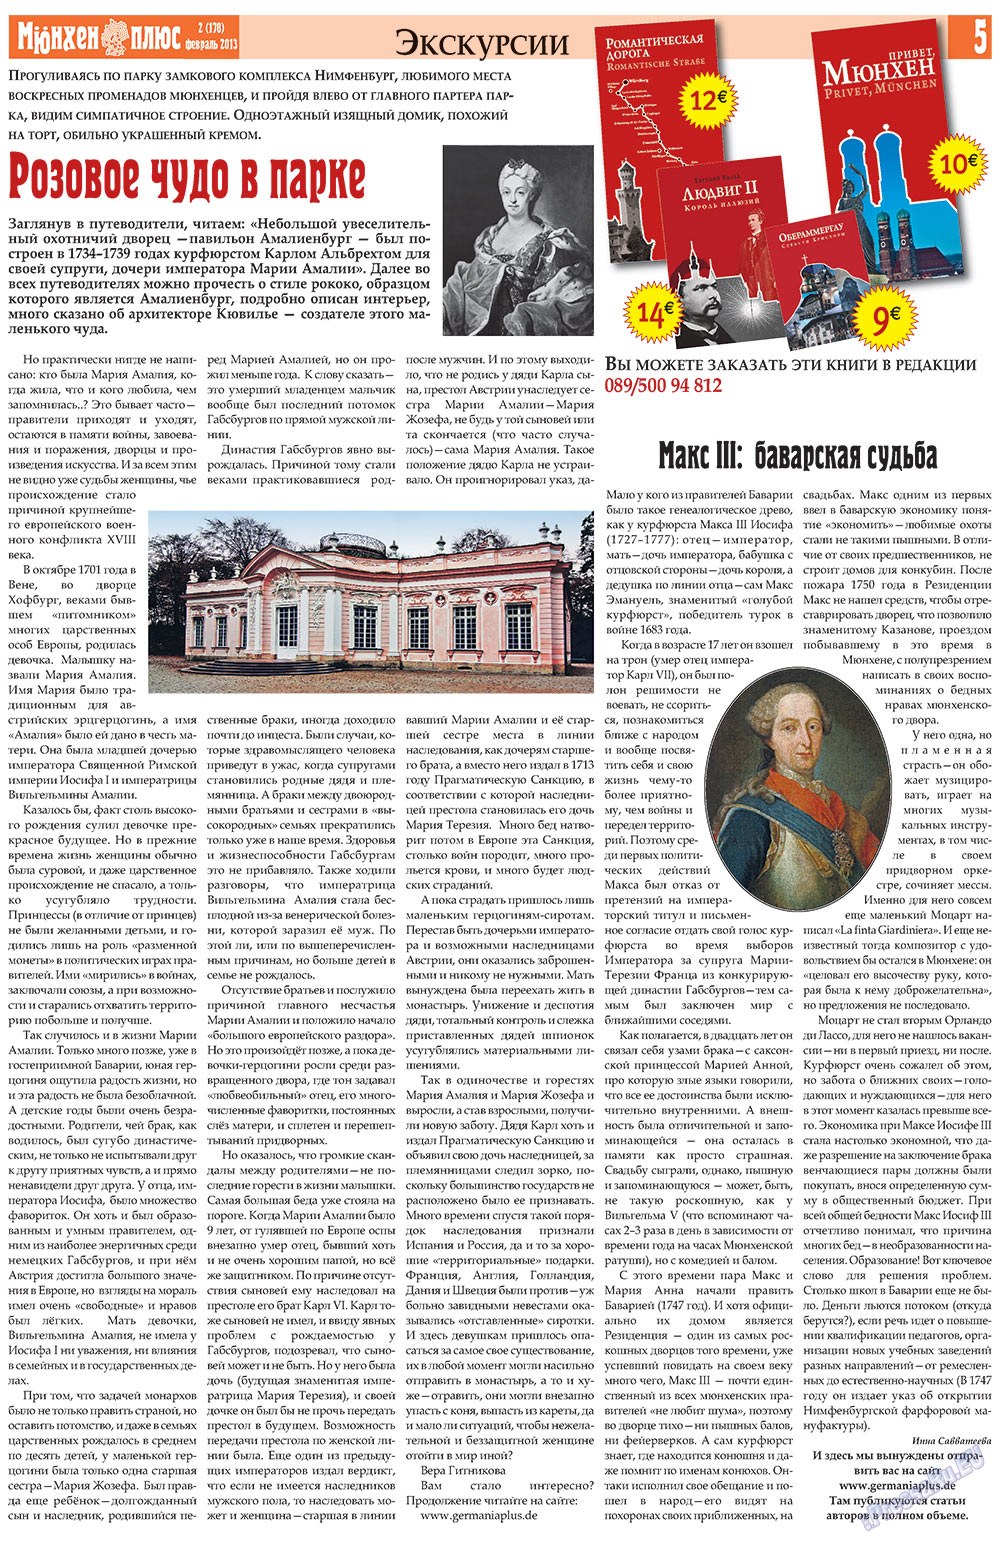 Германия плюс, газета. 2013 №2 стр.5